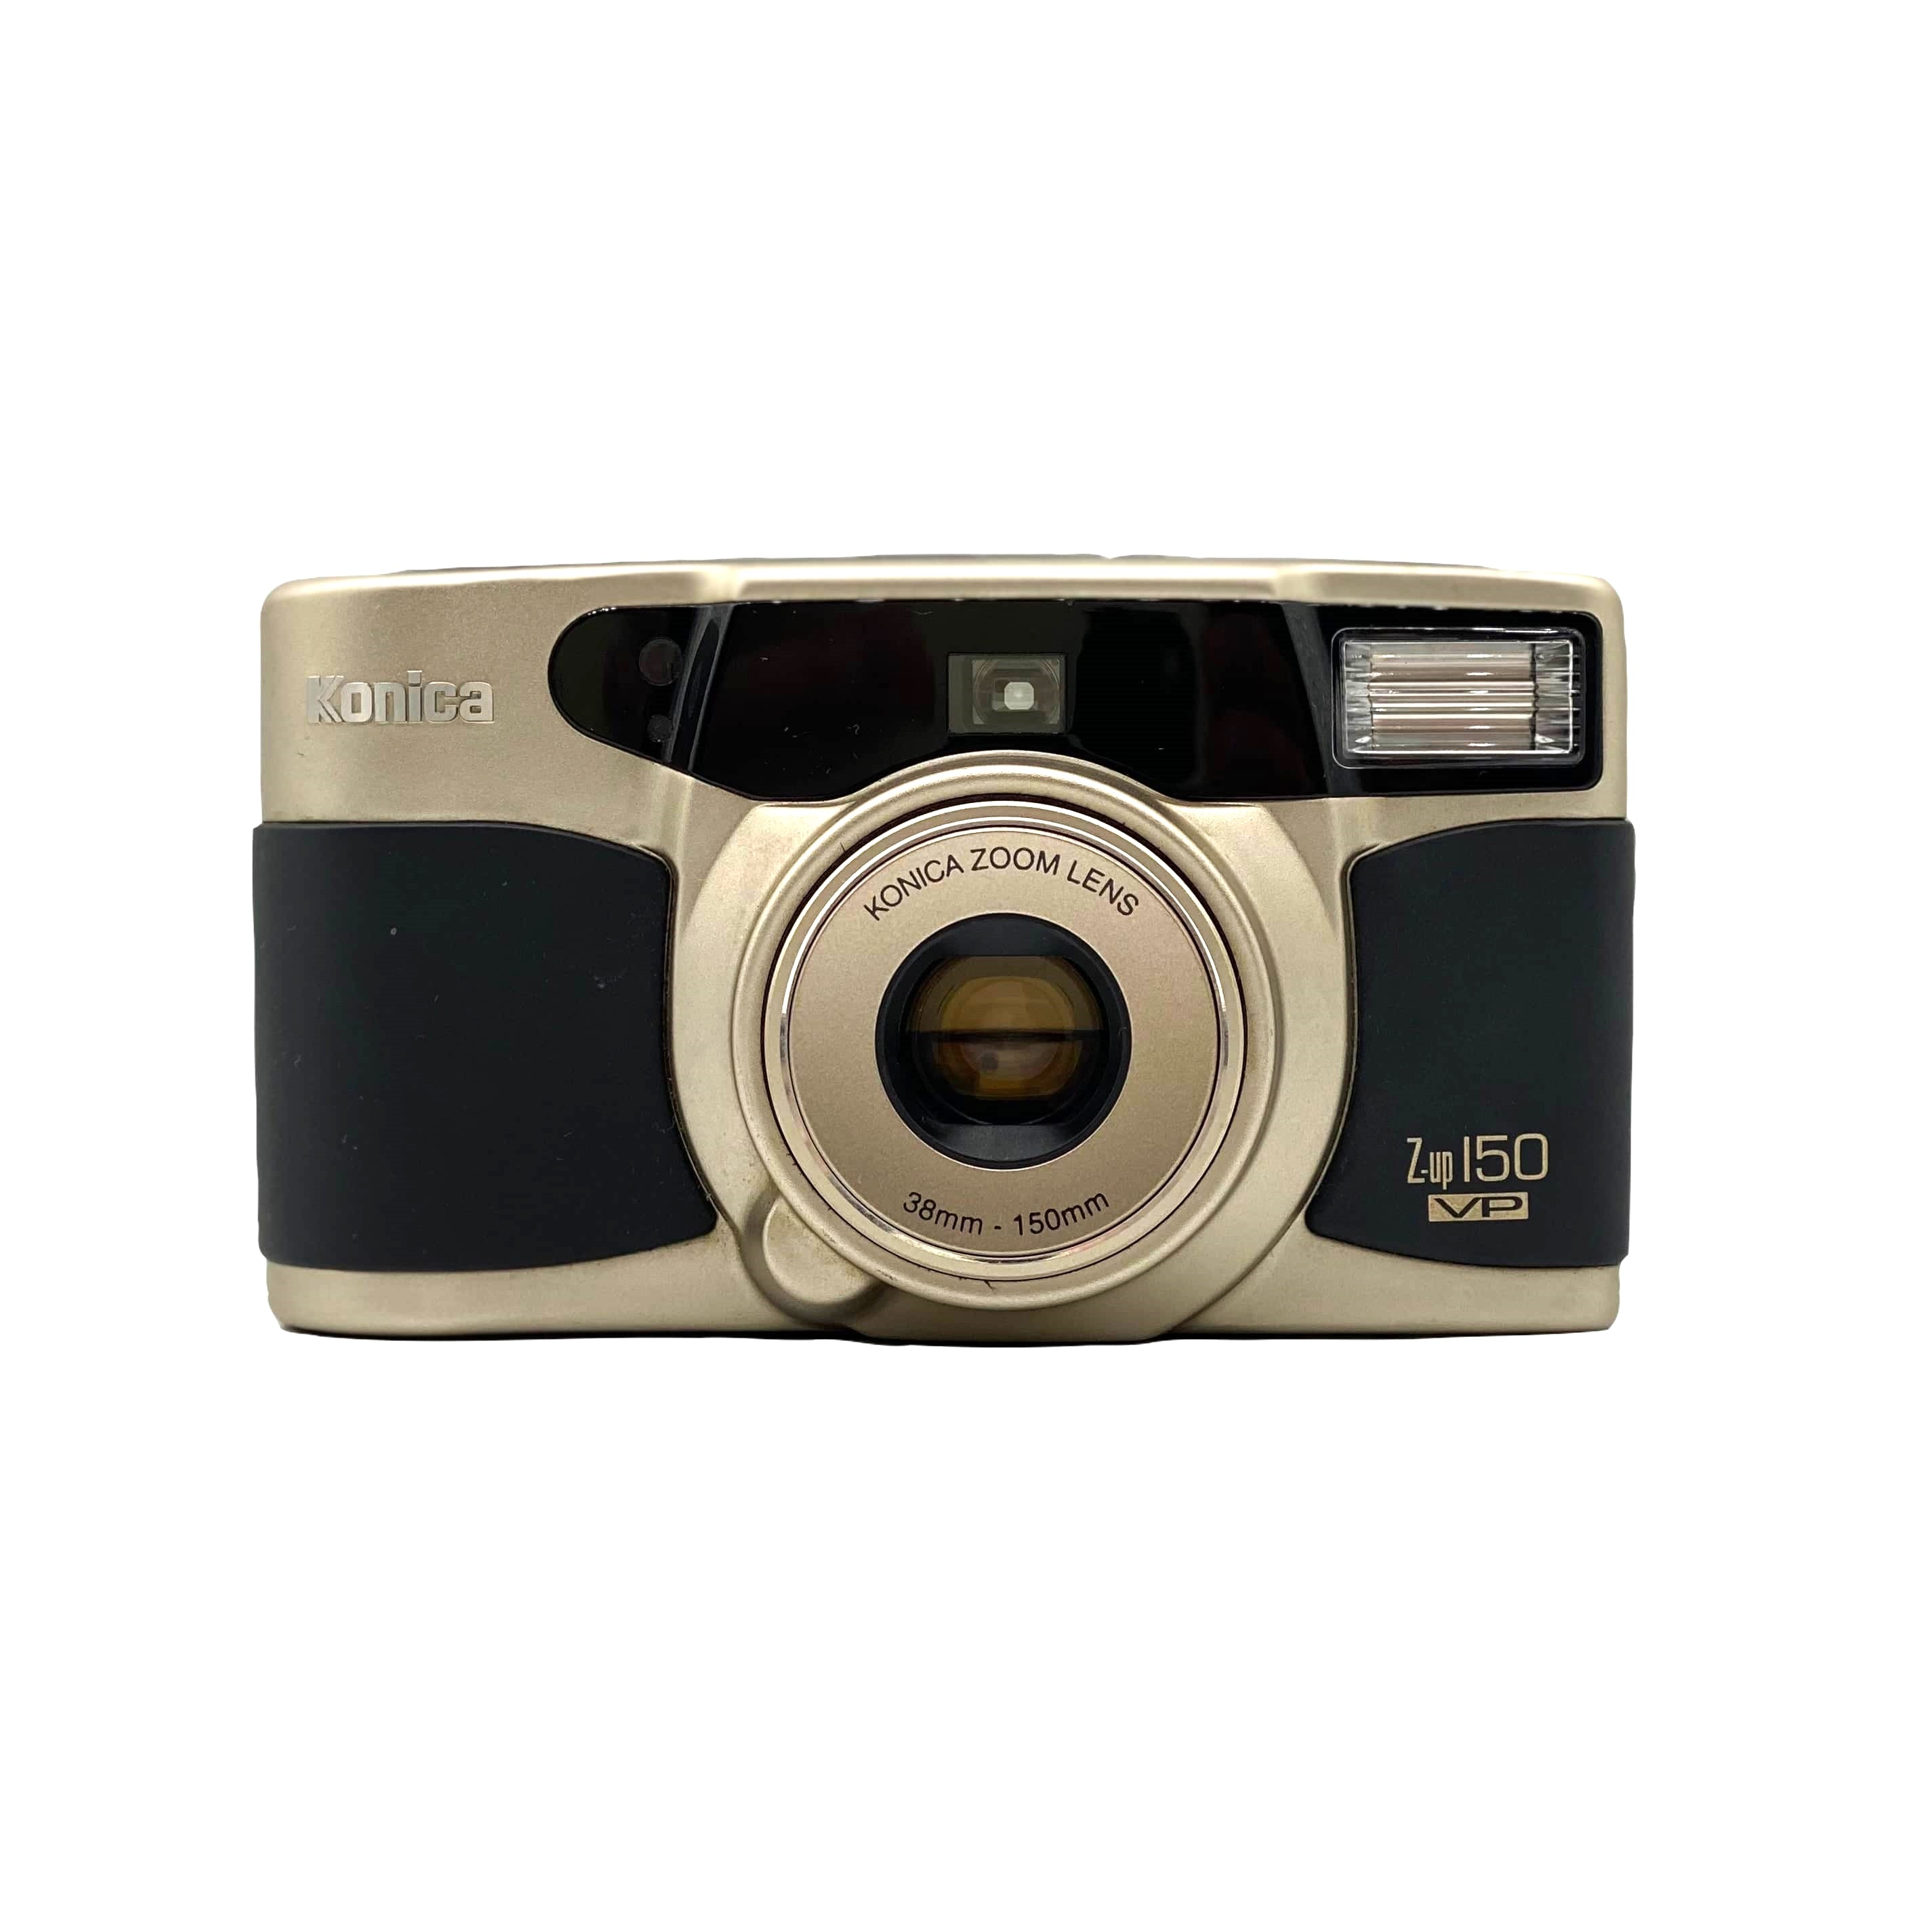 Konica Z-up 150 (VP) – Coolc Camera